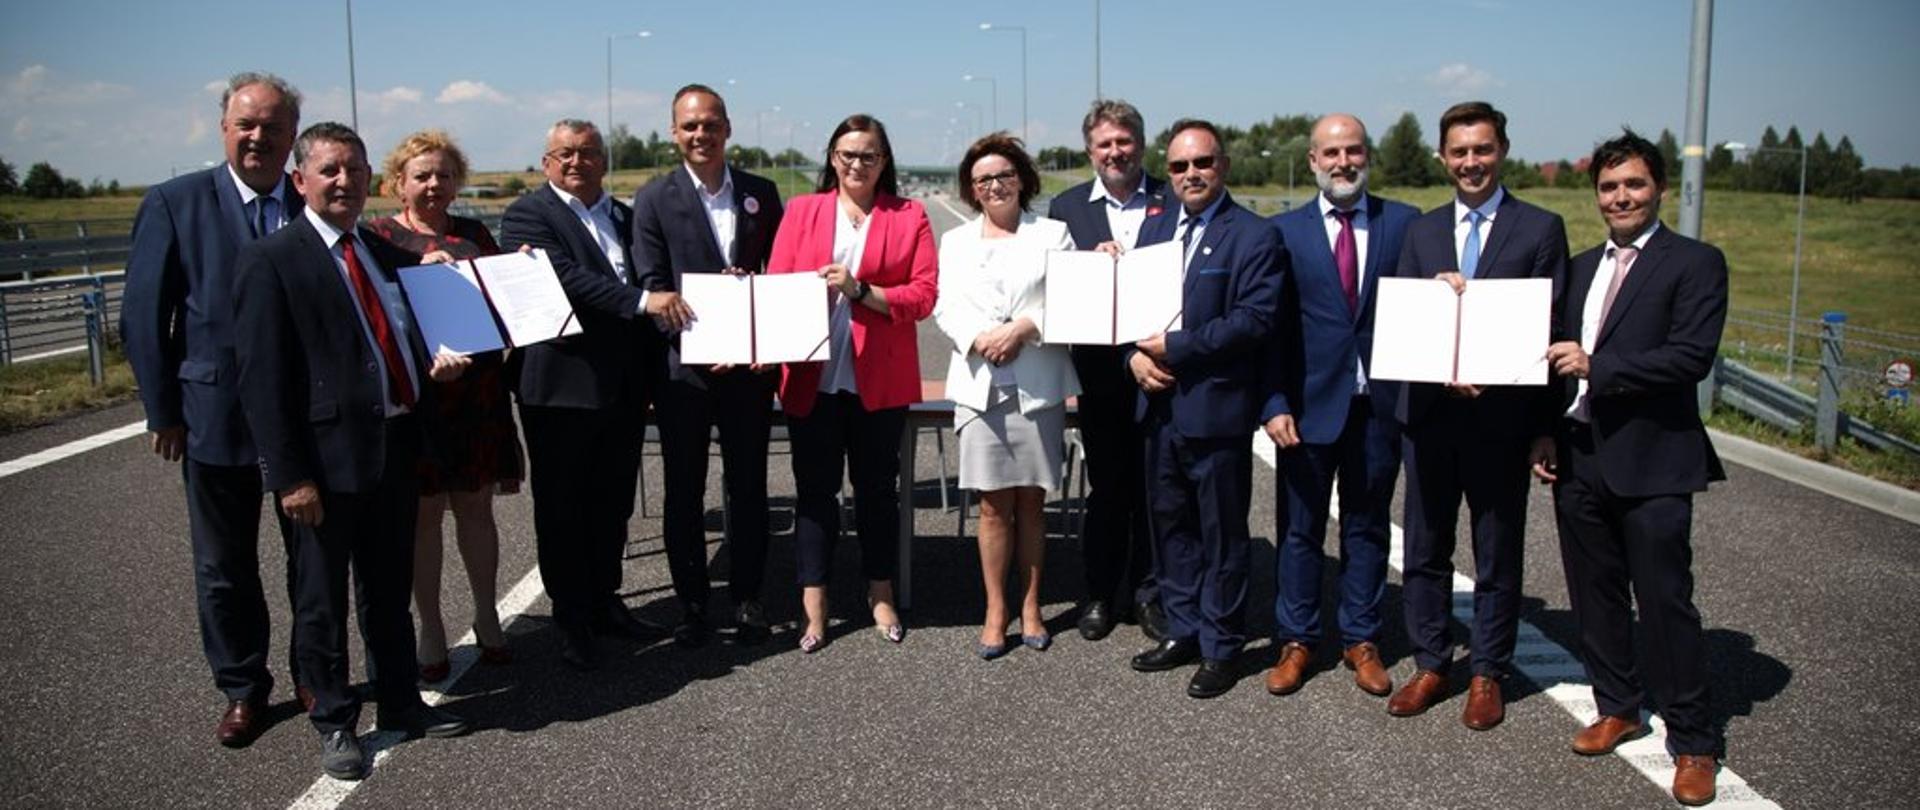 Generalna Dyrekcja Dróg Krajowych i Autostrad zawarła 10 lipca 2020 r. umowę na projekt i budowę odcinka drogi ekspresowej S19 o długości 10,3 km od węzła Rzeszów Południe do węzła Babica.